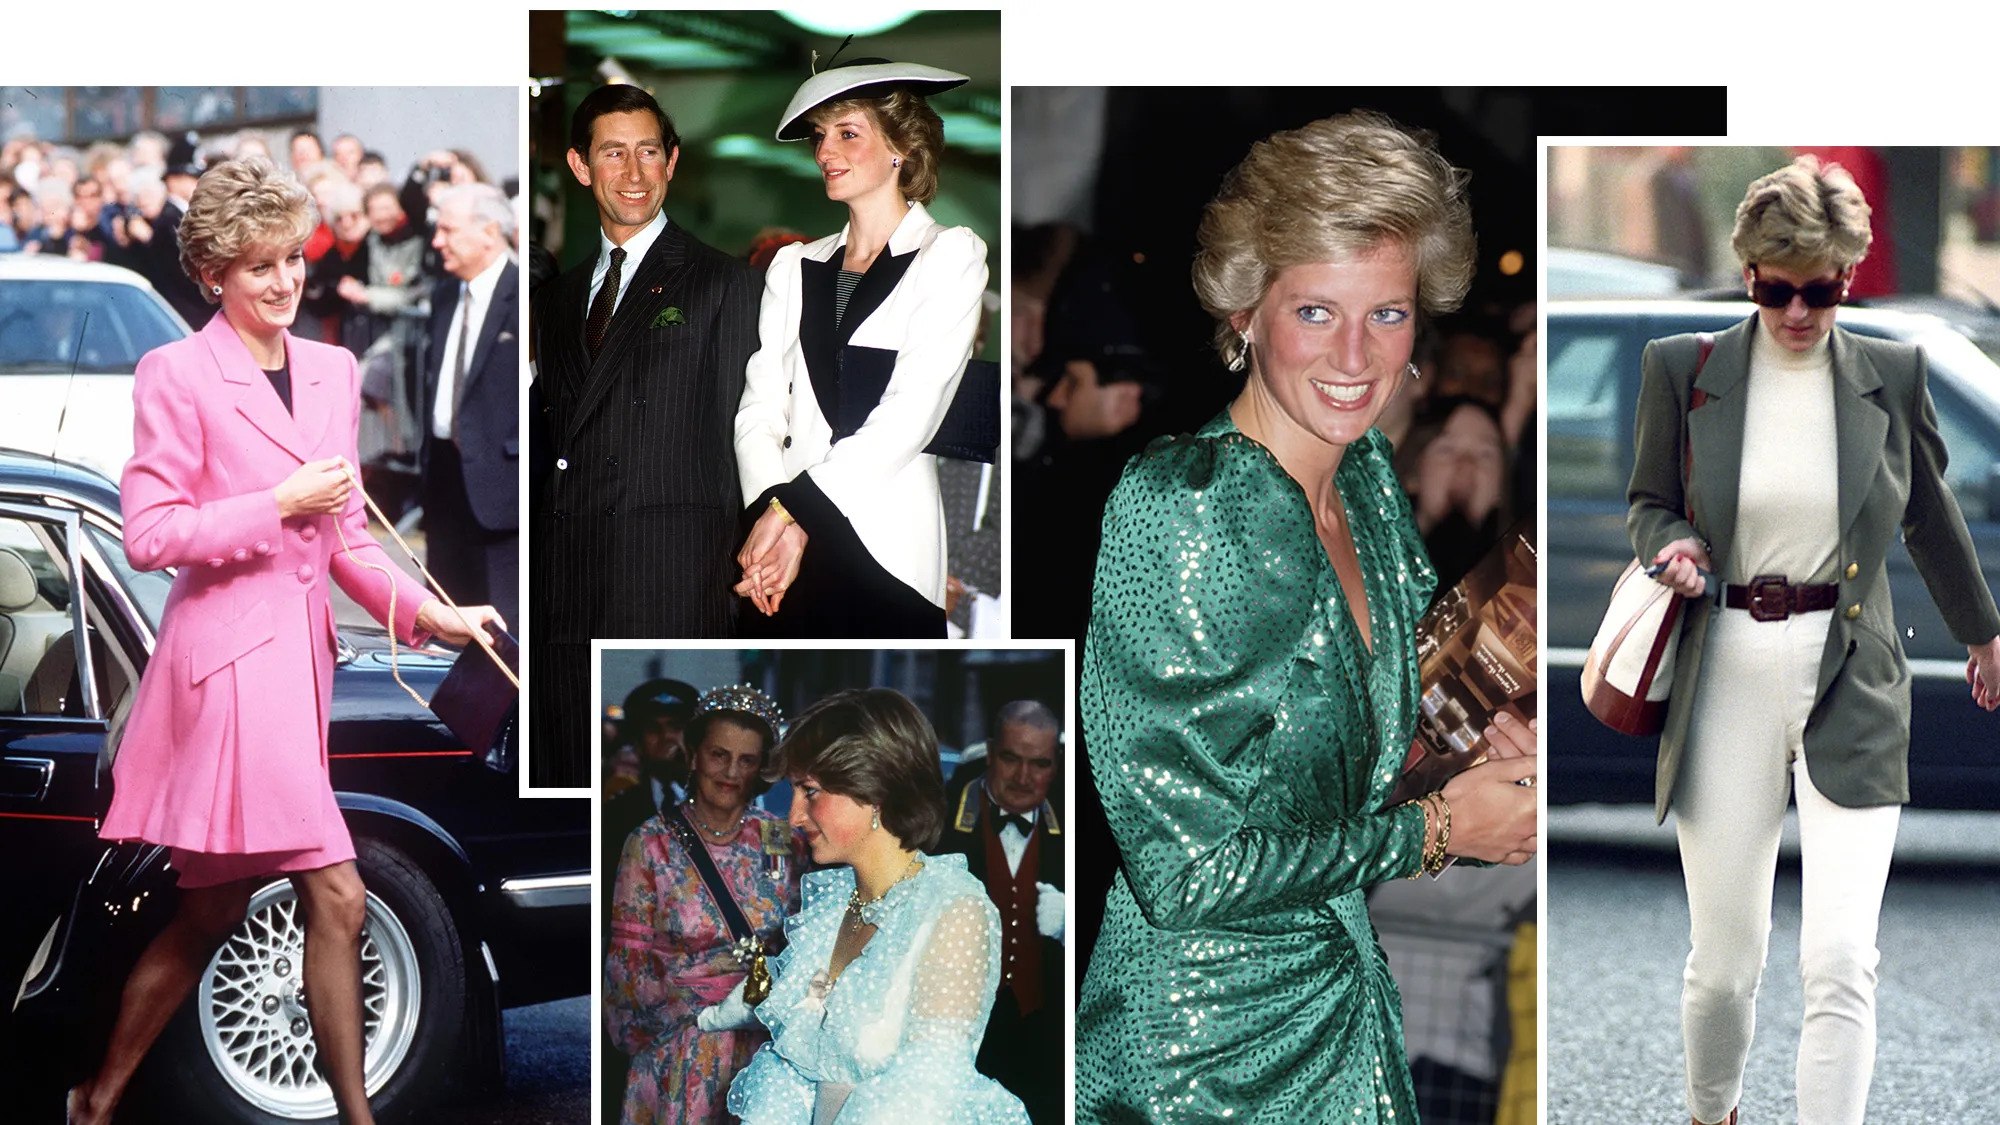 تميزت الأميرة ديانا بارتداء ملابس عملية أكثر من الملابس الرسمية